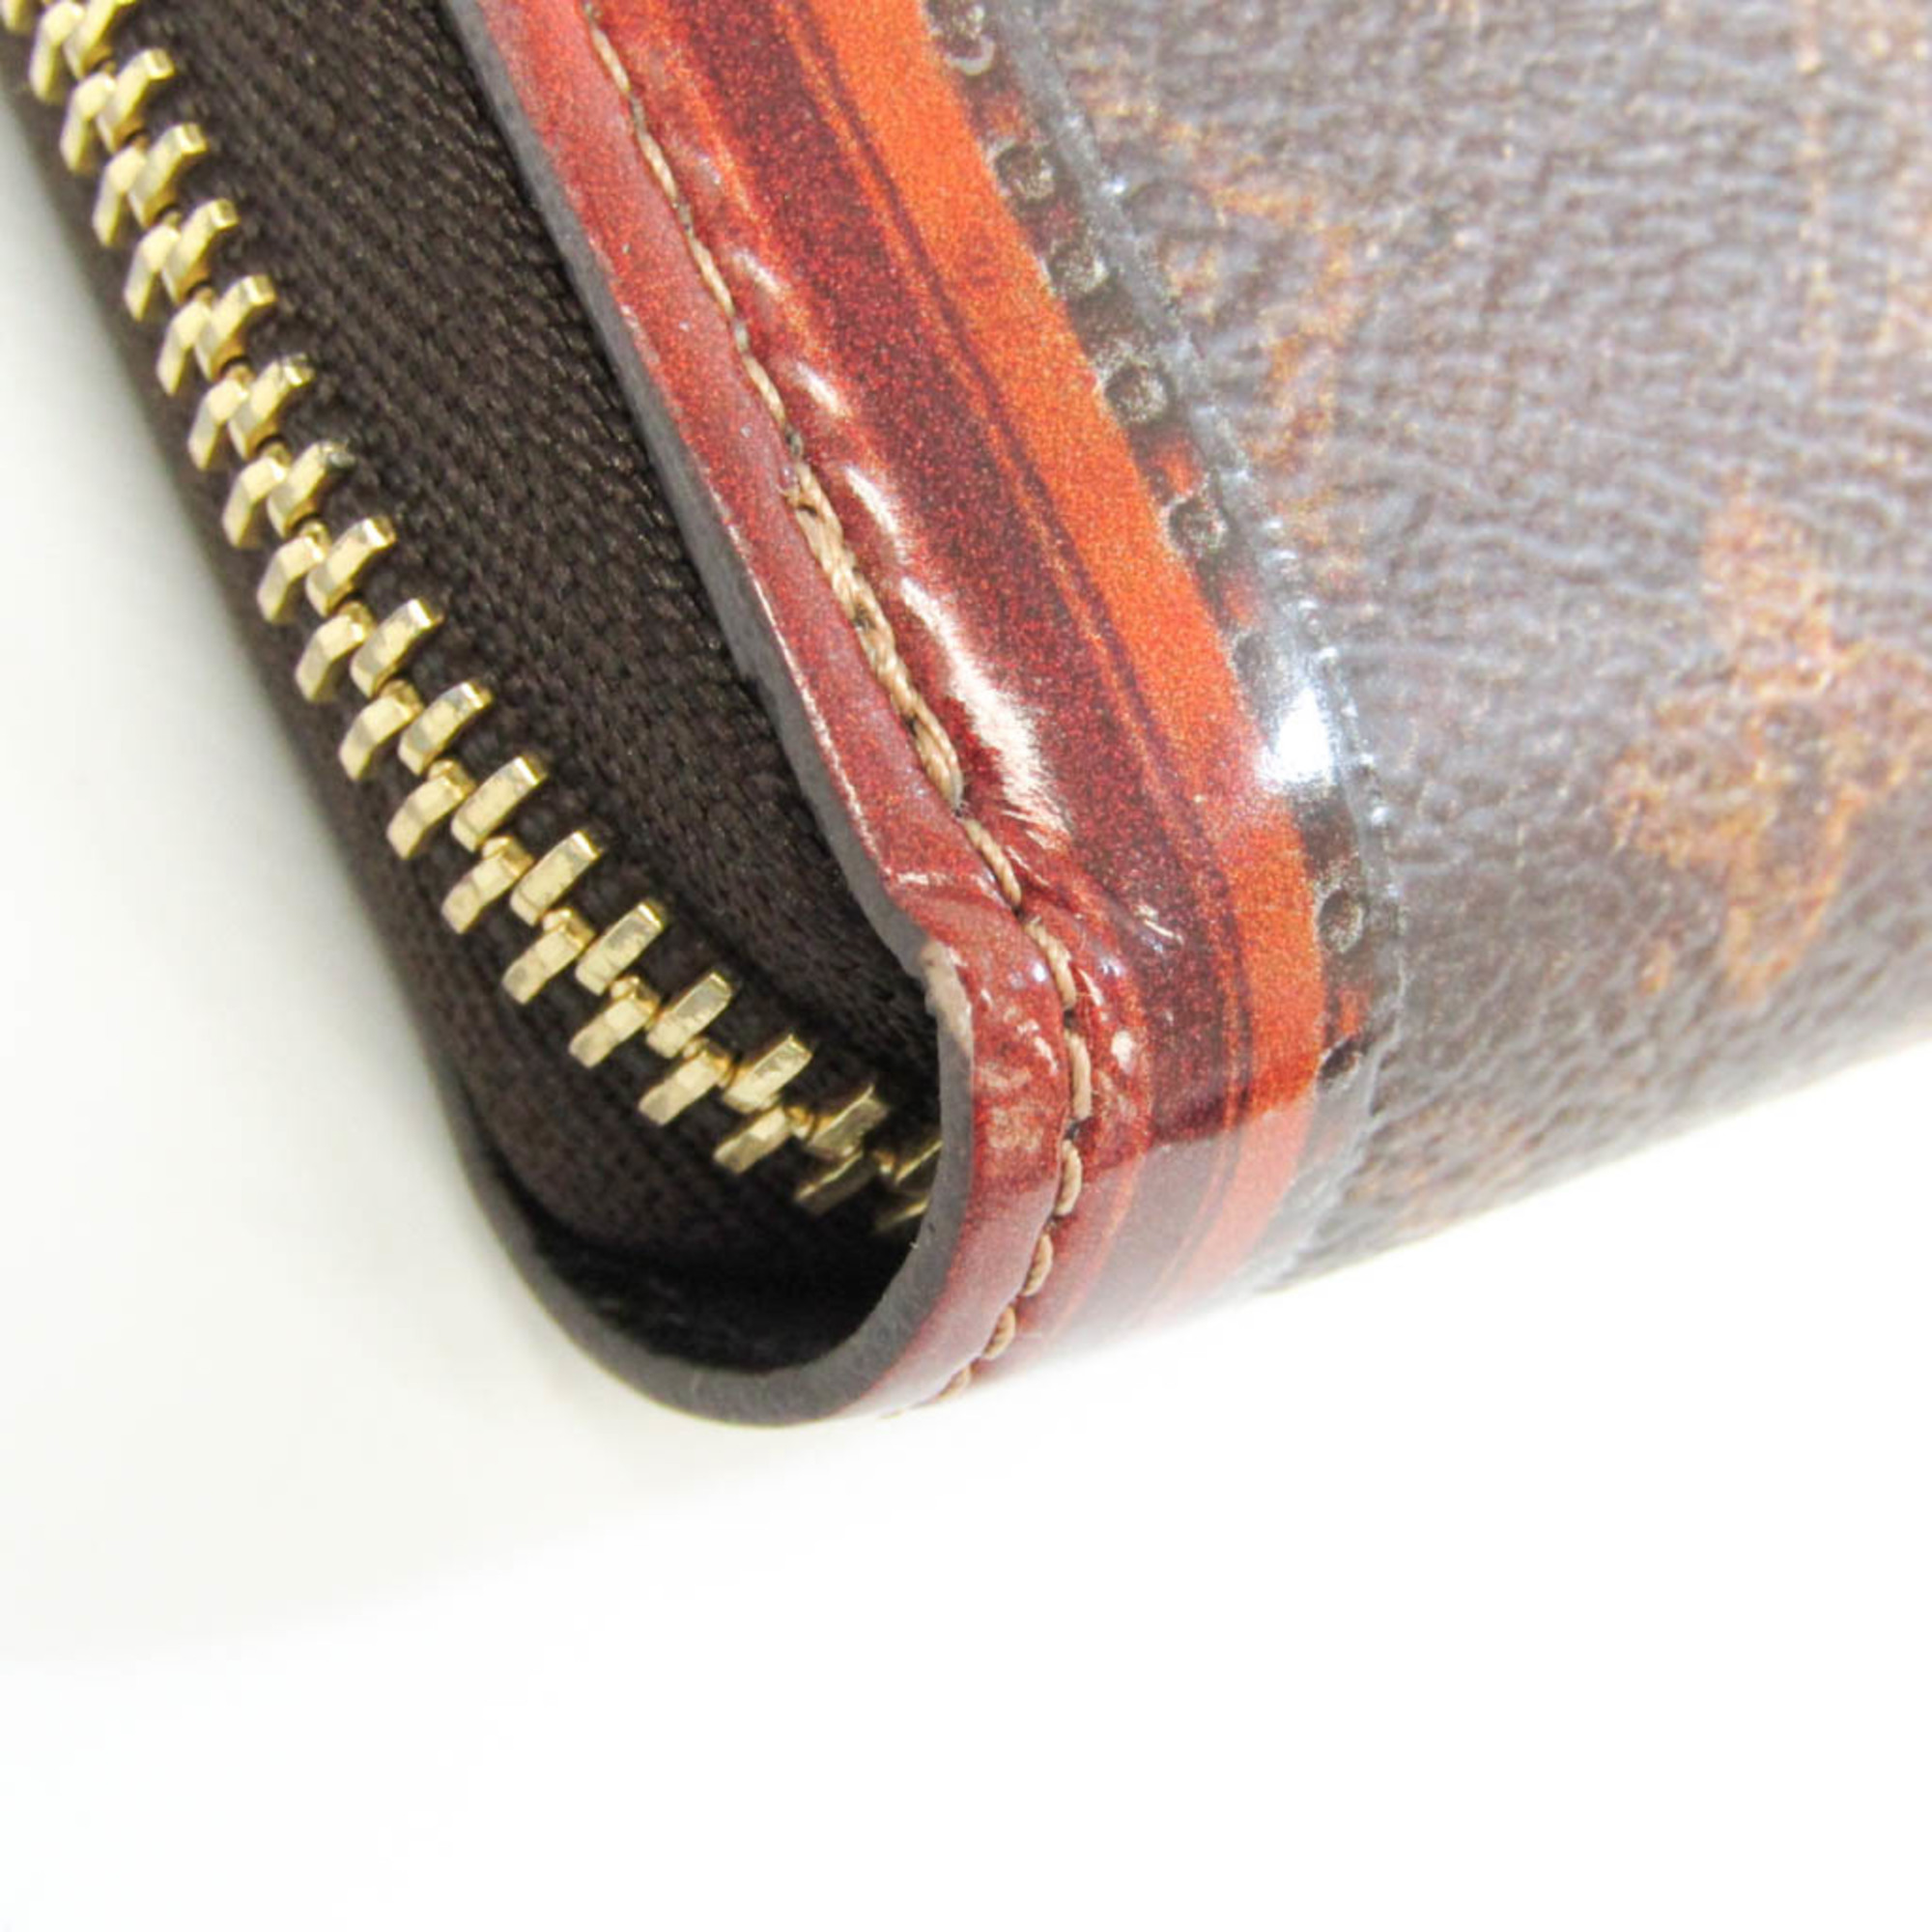 Louis Vuitton Monogram Zippy Wallet Trunk Time M52746 Women,Men Monogram Long Wallet (bi-fold) Brown